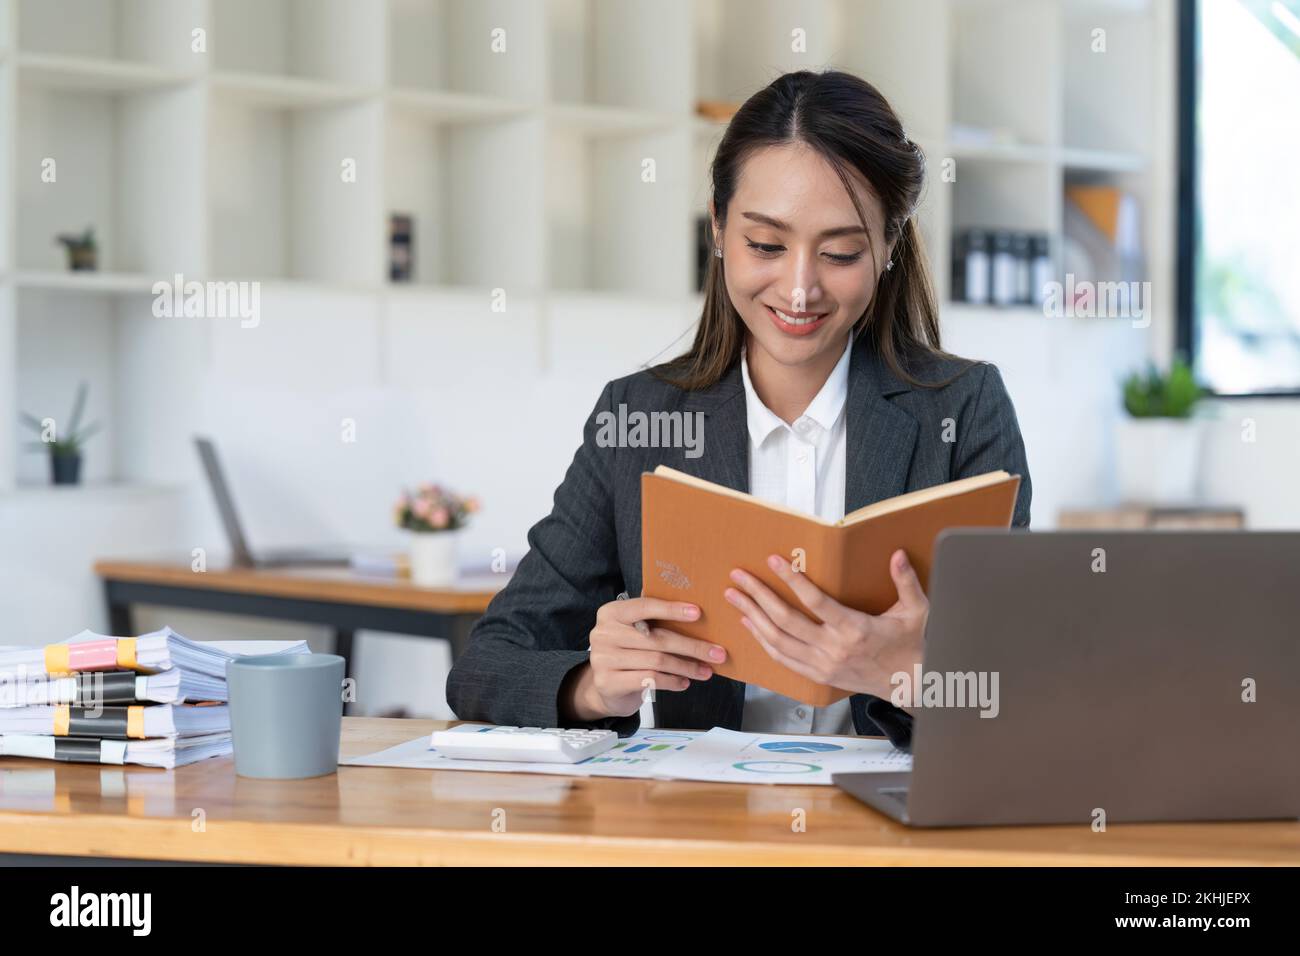 Souriant jeunes femmes d'affaires asiatiques travaillant avec la calculatrice, document d'affaires et ordinateur portable, inspecteur financier et secrétaire de fabrication Banque D'Images